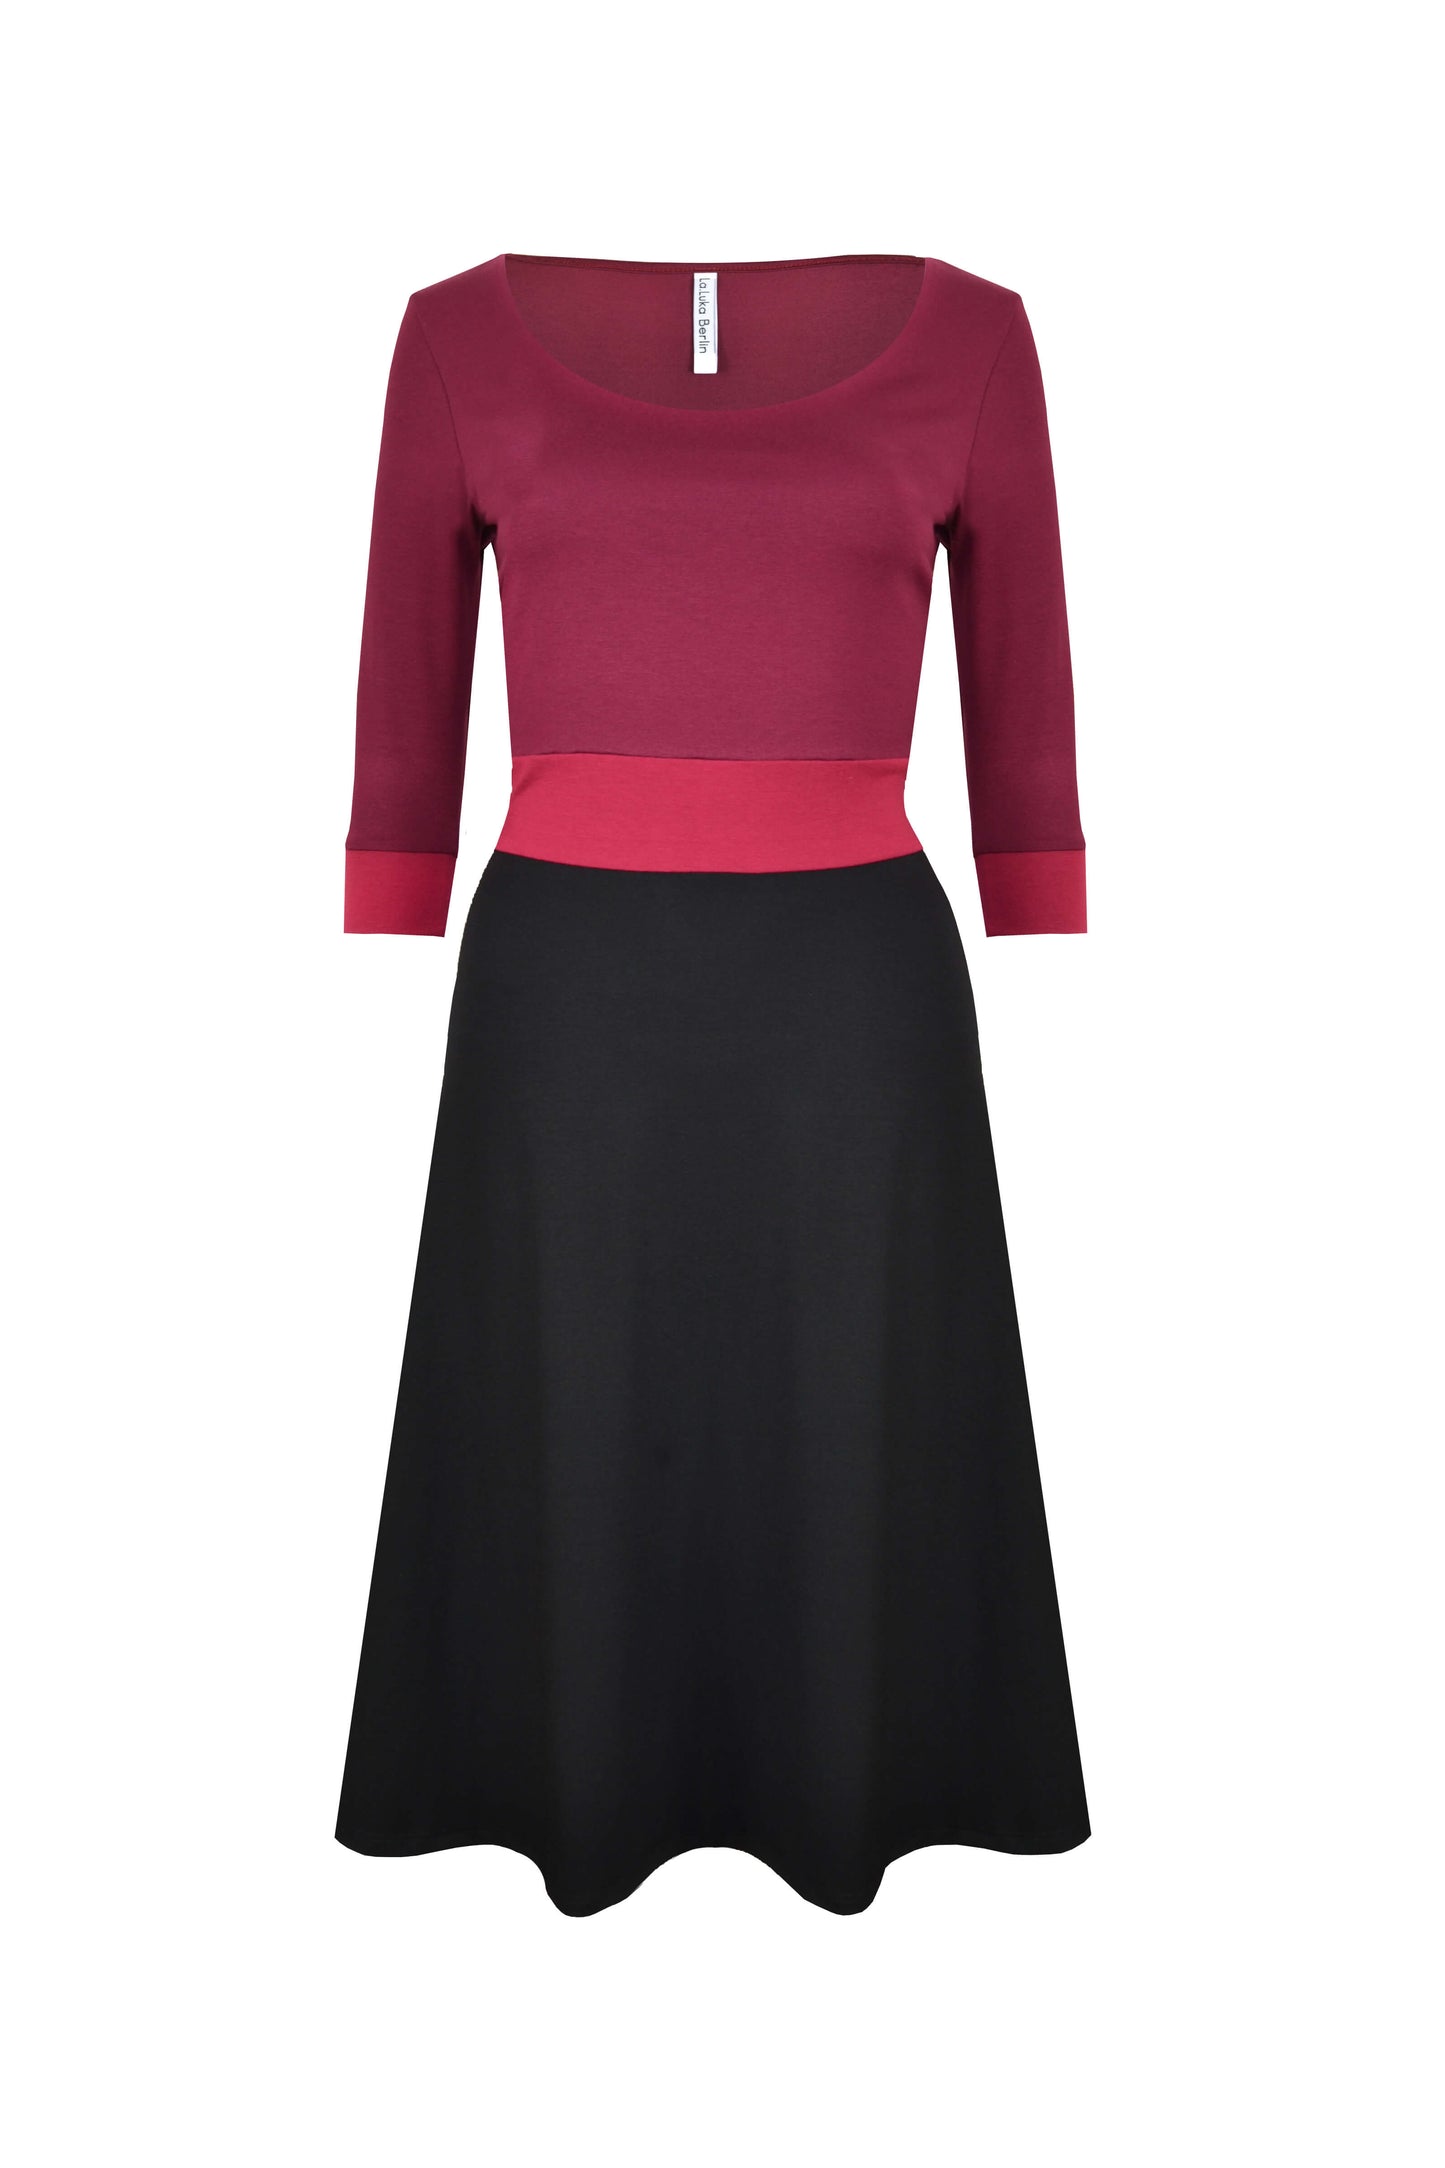 Rückansicht von knielangen Jerseykleid mit 3/4-Ärmeln in den Farben Schwarz und Bordeaux von LA.LUKA Berlin